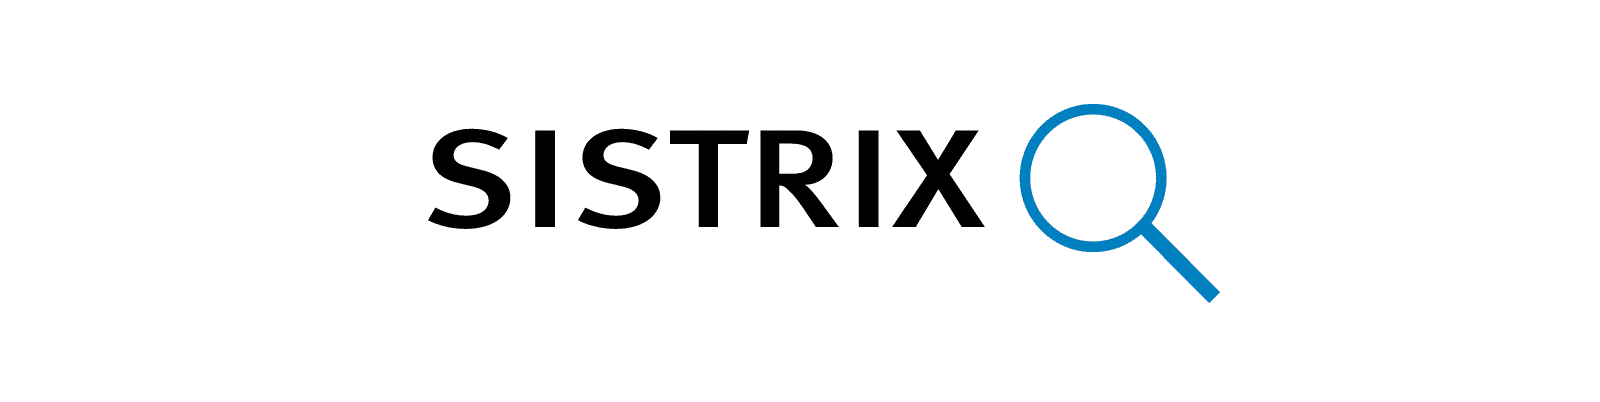 sistrix